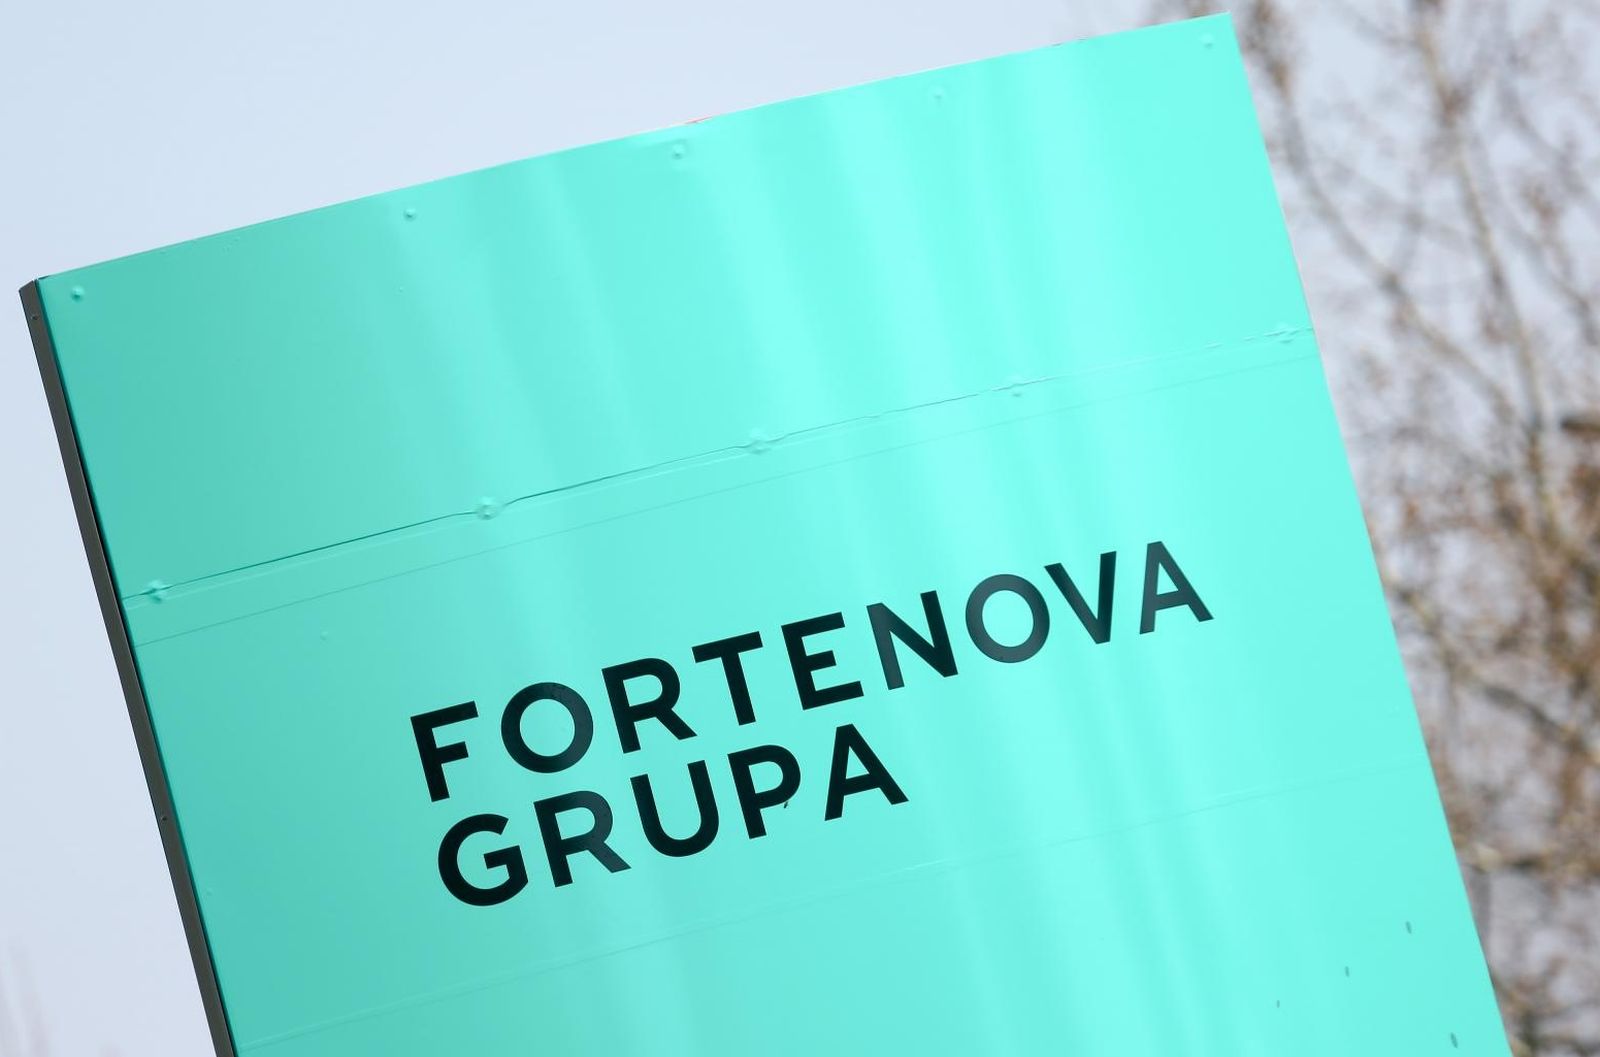 01.04.2019., Zagreb - Tvrtka Agrokor promijenila je naziv u Fortenova Grupa. 
Photo: Borna Filic/PIXSELL